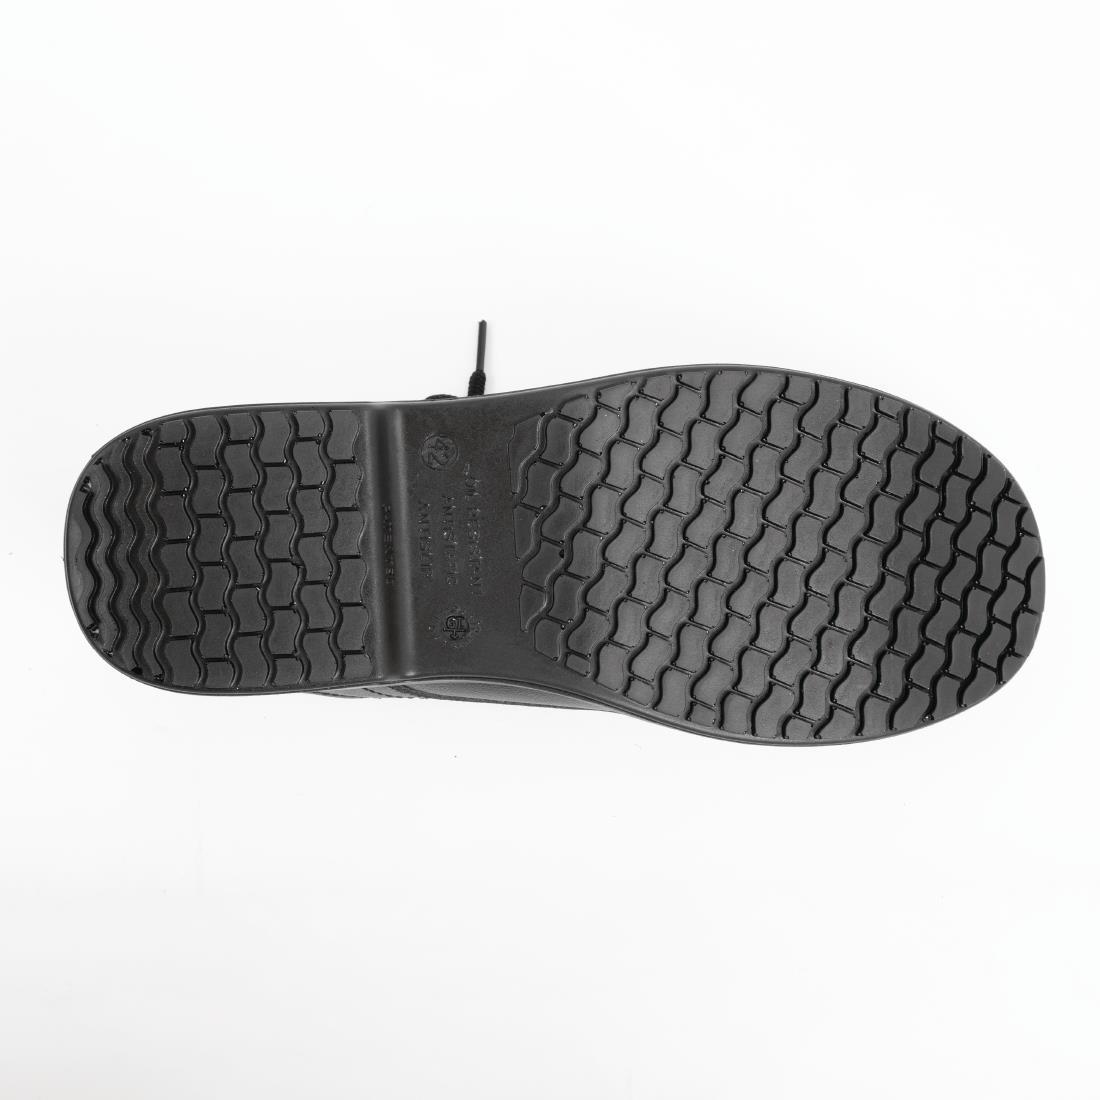 Slipbuster Basic Toe Cap Safety Shoes Black 44 - BB497-44  - 2